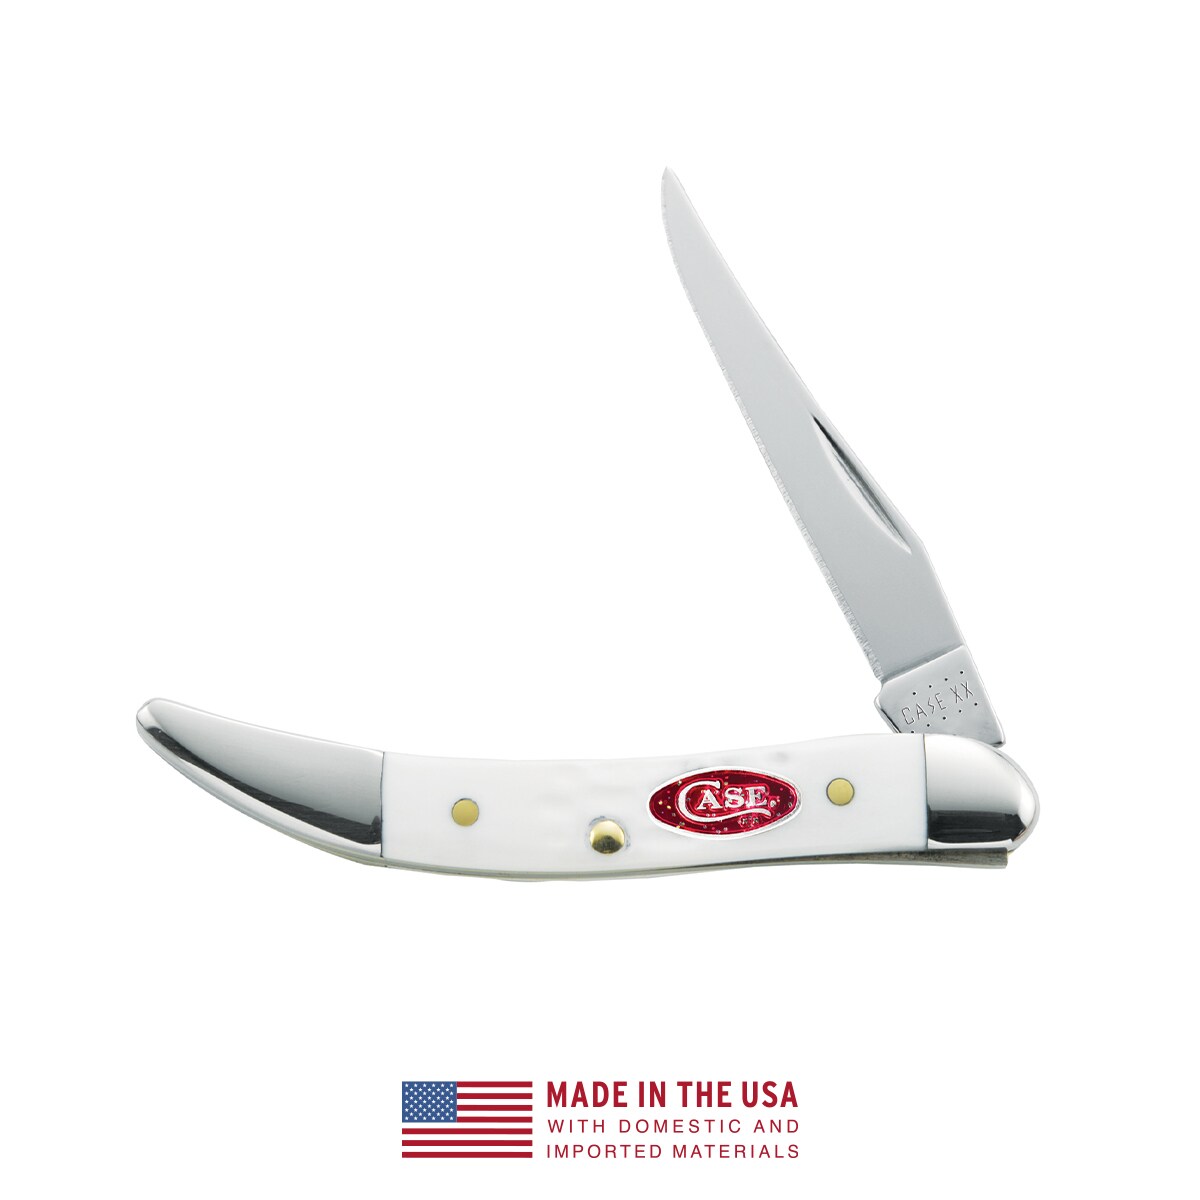 Carpenter's knife with sharpener, Fiskars - Universal working knives